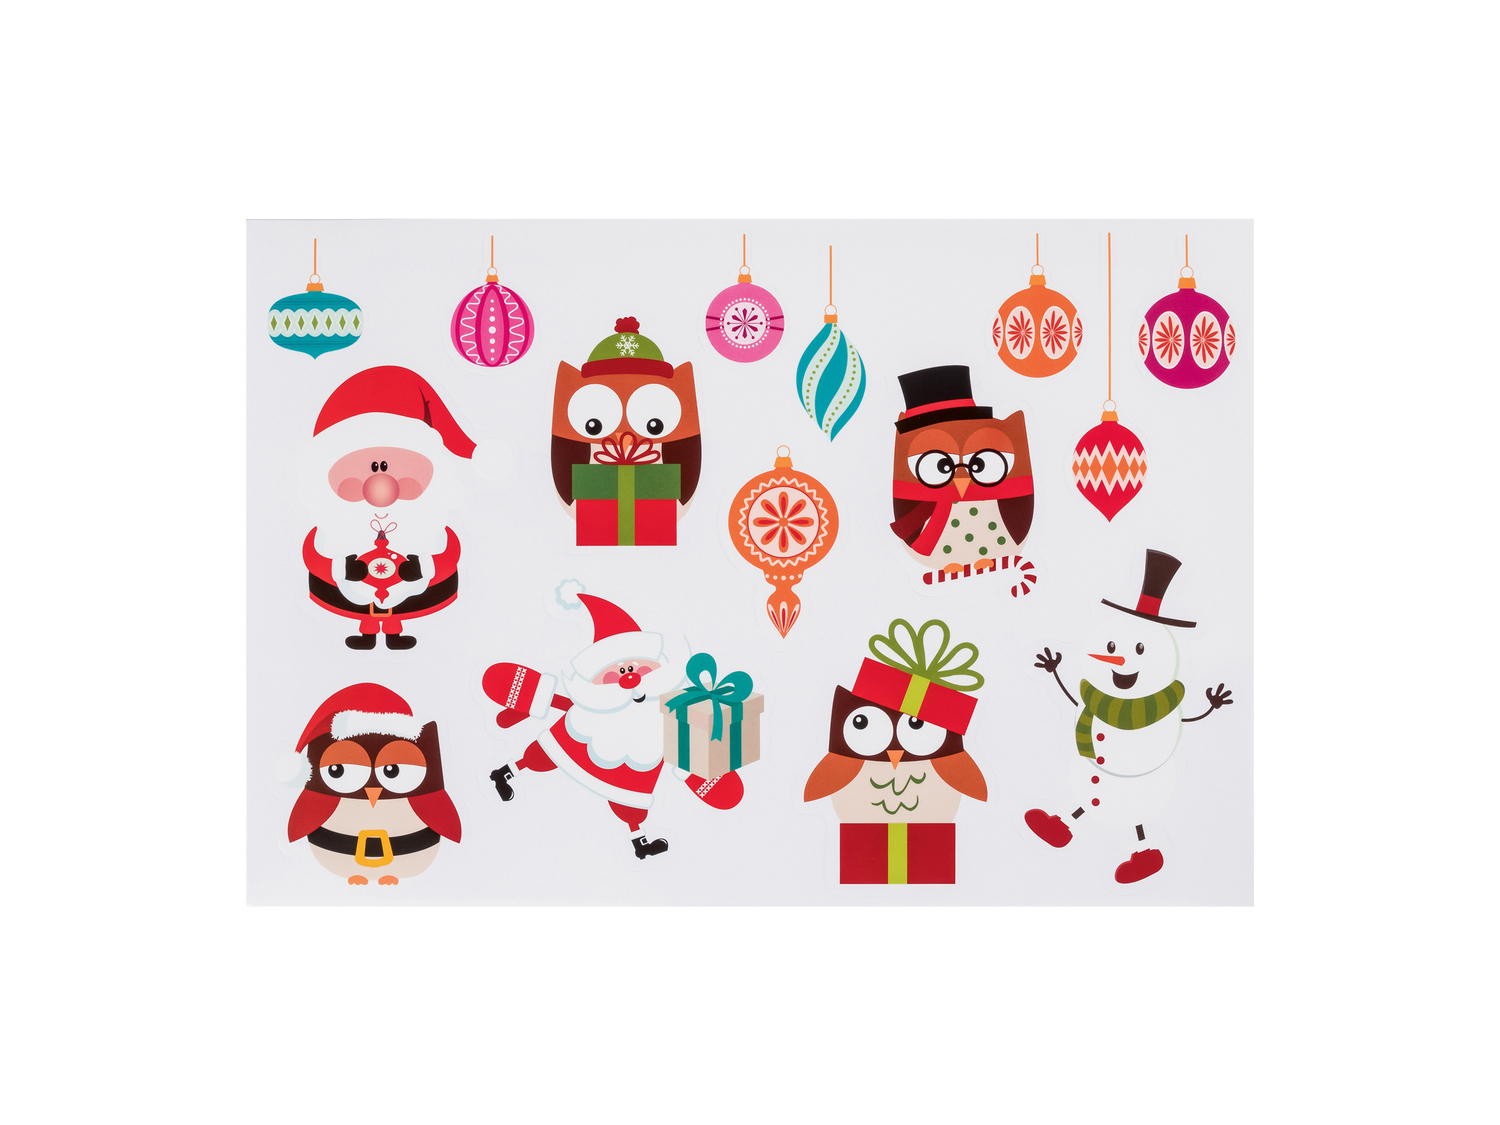 Decorazioni natalizie adesive Melinera, prezzo 0.99 &#8364;  

Caratteristiche